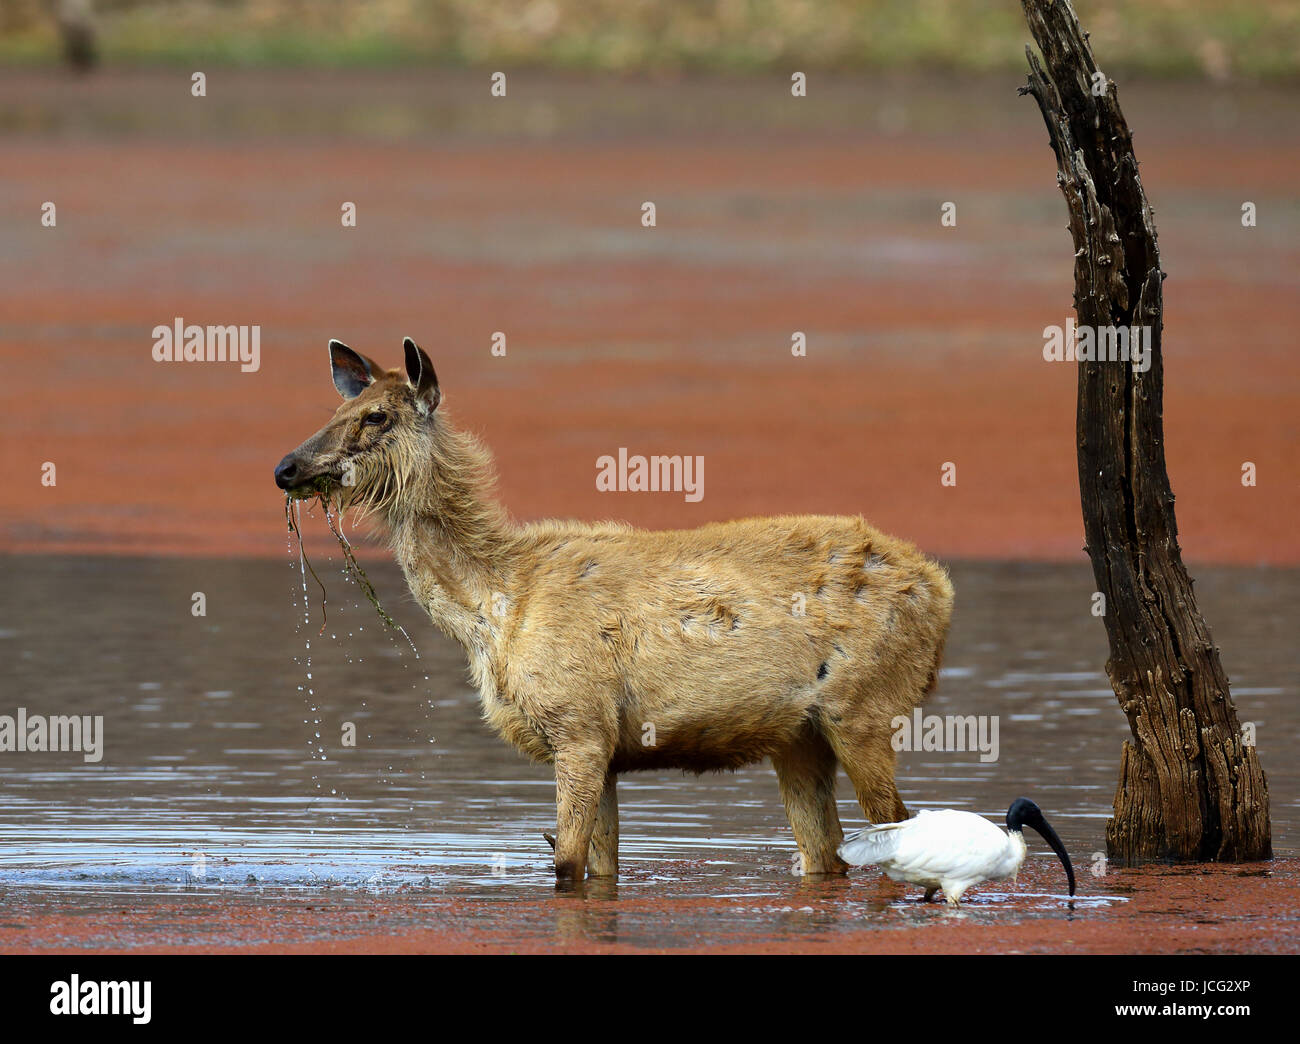 Hirsch steht im Wasser des Flusses in freier Wildbahn. Indien. Nationalpark. Stockfoto